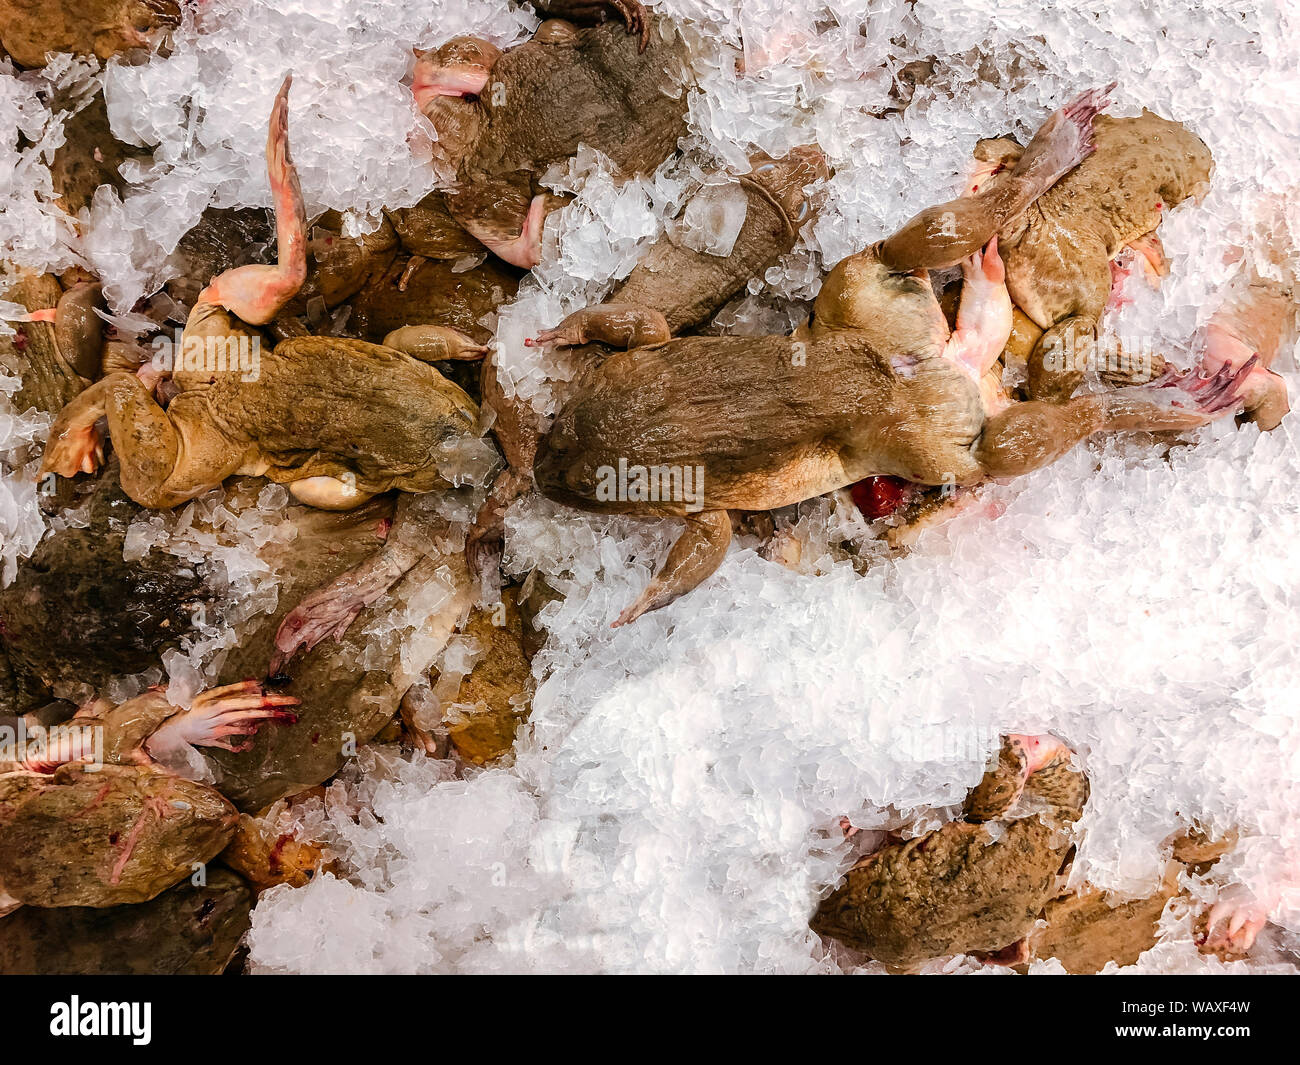 Close up matières frais asiatiques ou grenouille ouaouaron sur la glace froide dans le marché des fruits de mer Vue de dessus - concept répugnant exotiques Banque D'Images